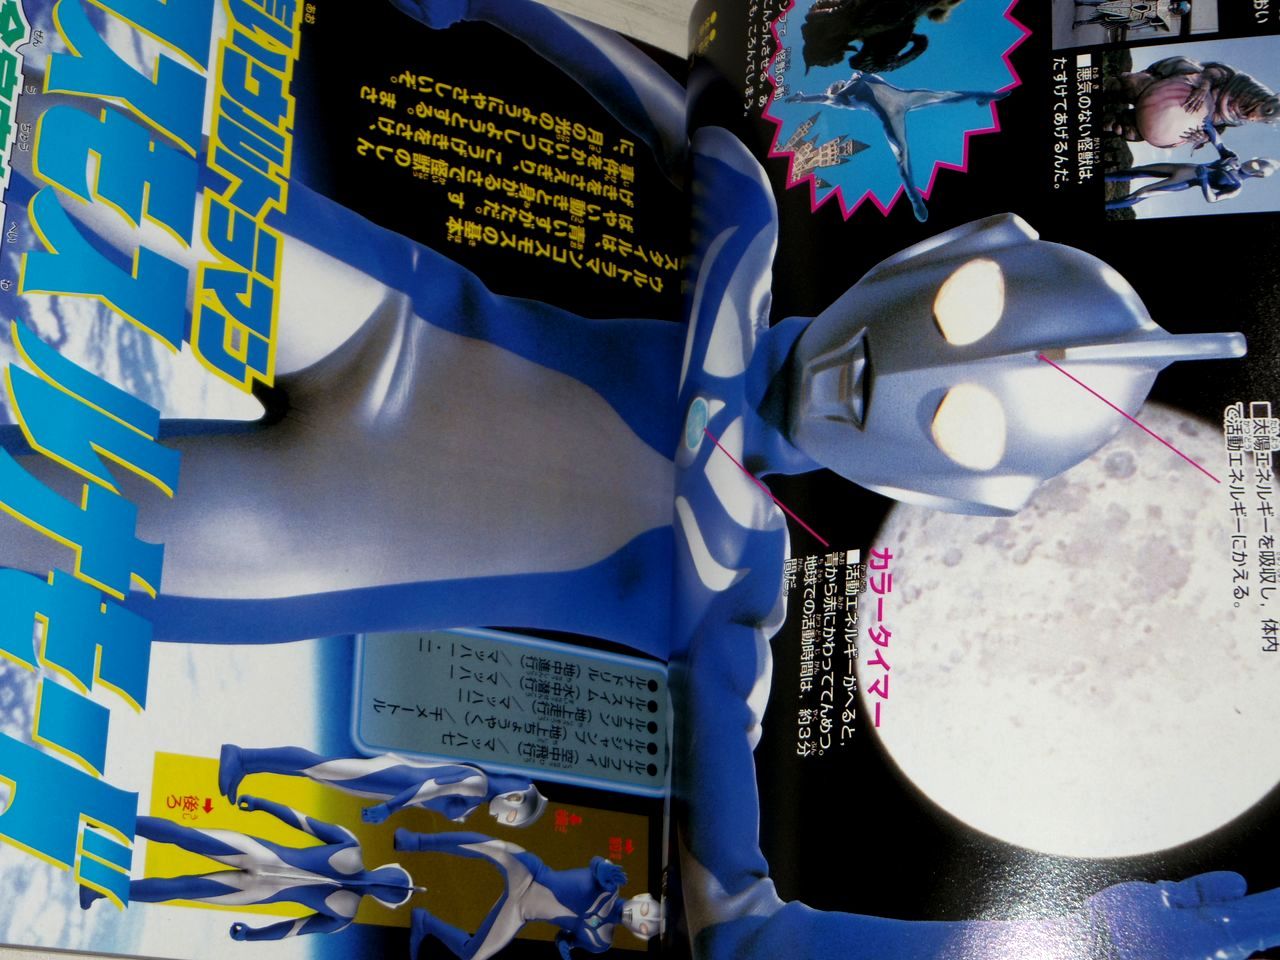 Ultraman Cosmos Himitsu Cho Hyakka Book Tokusatsu Kaiju Photo Guide Ebay